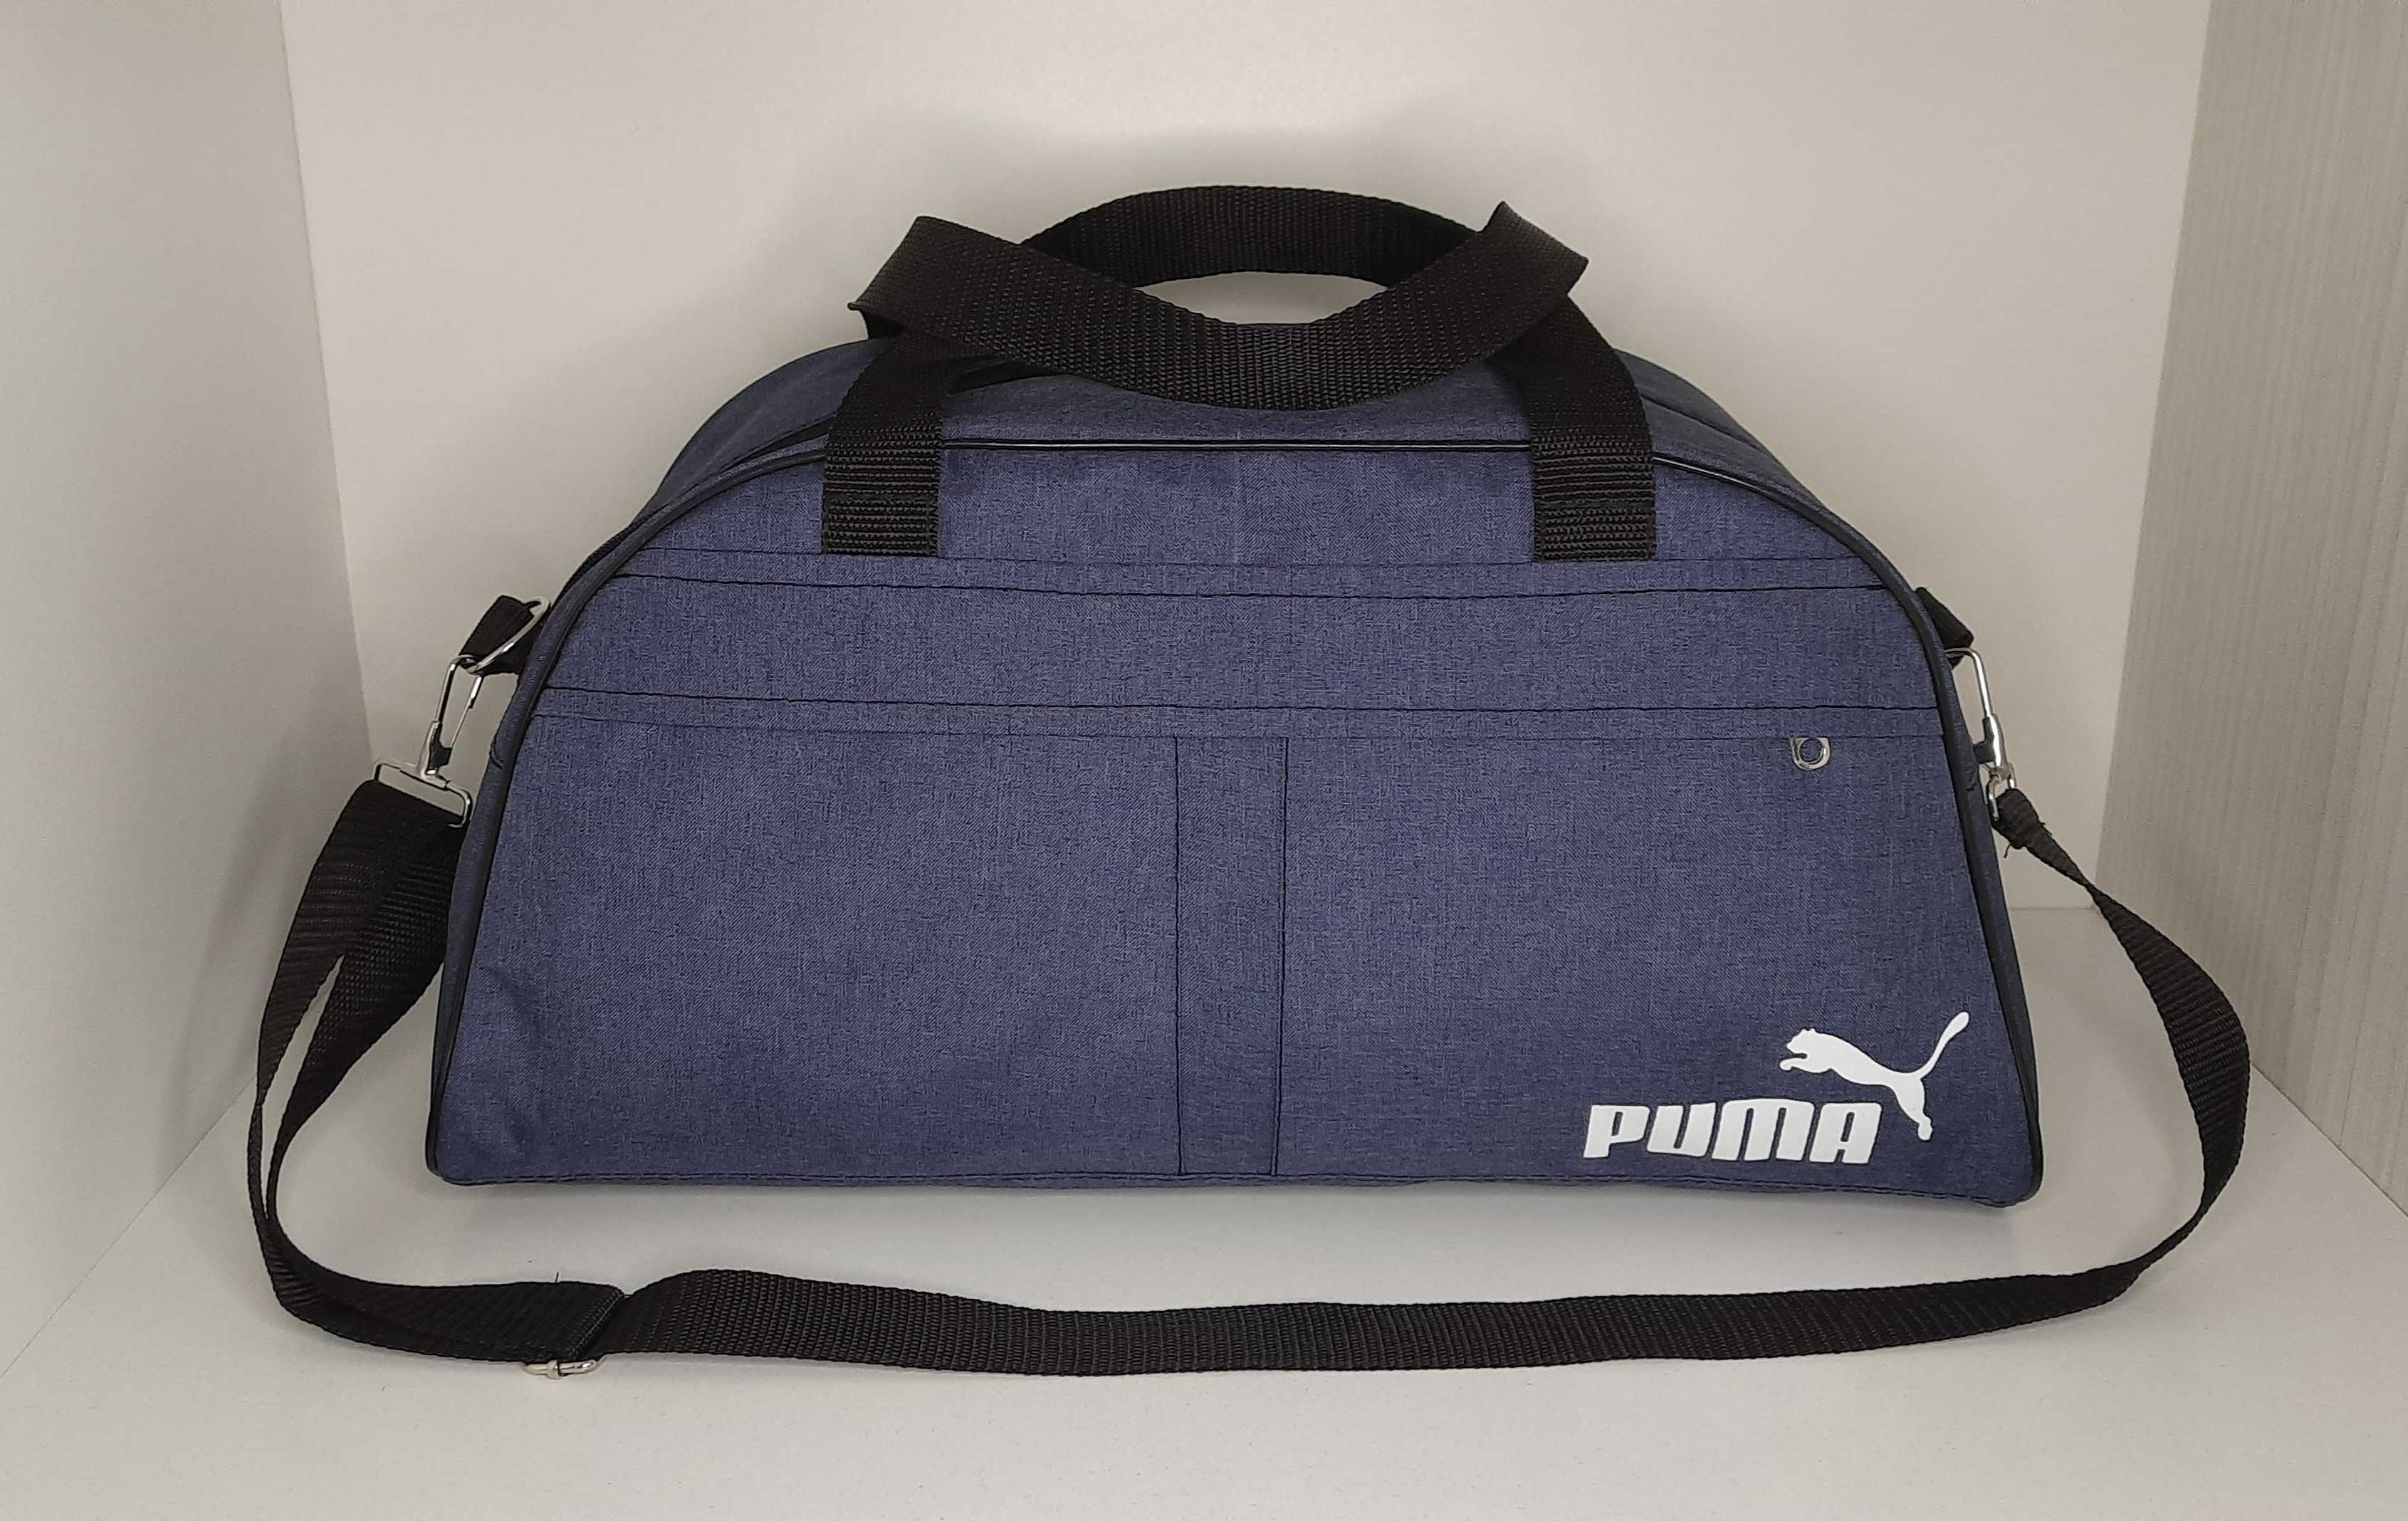 Спортивная сумка Puma фитнес. Новая.